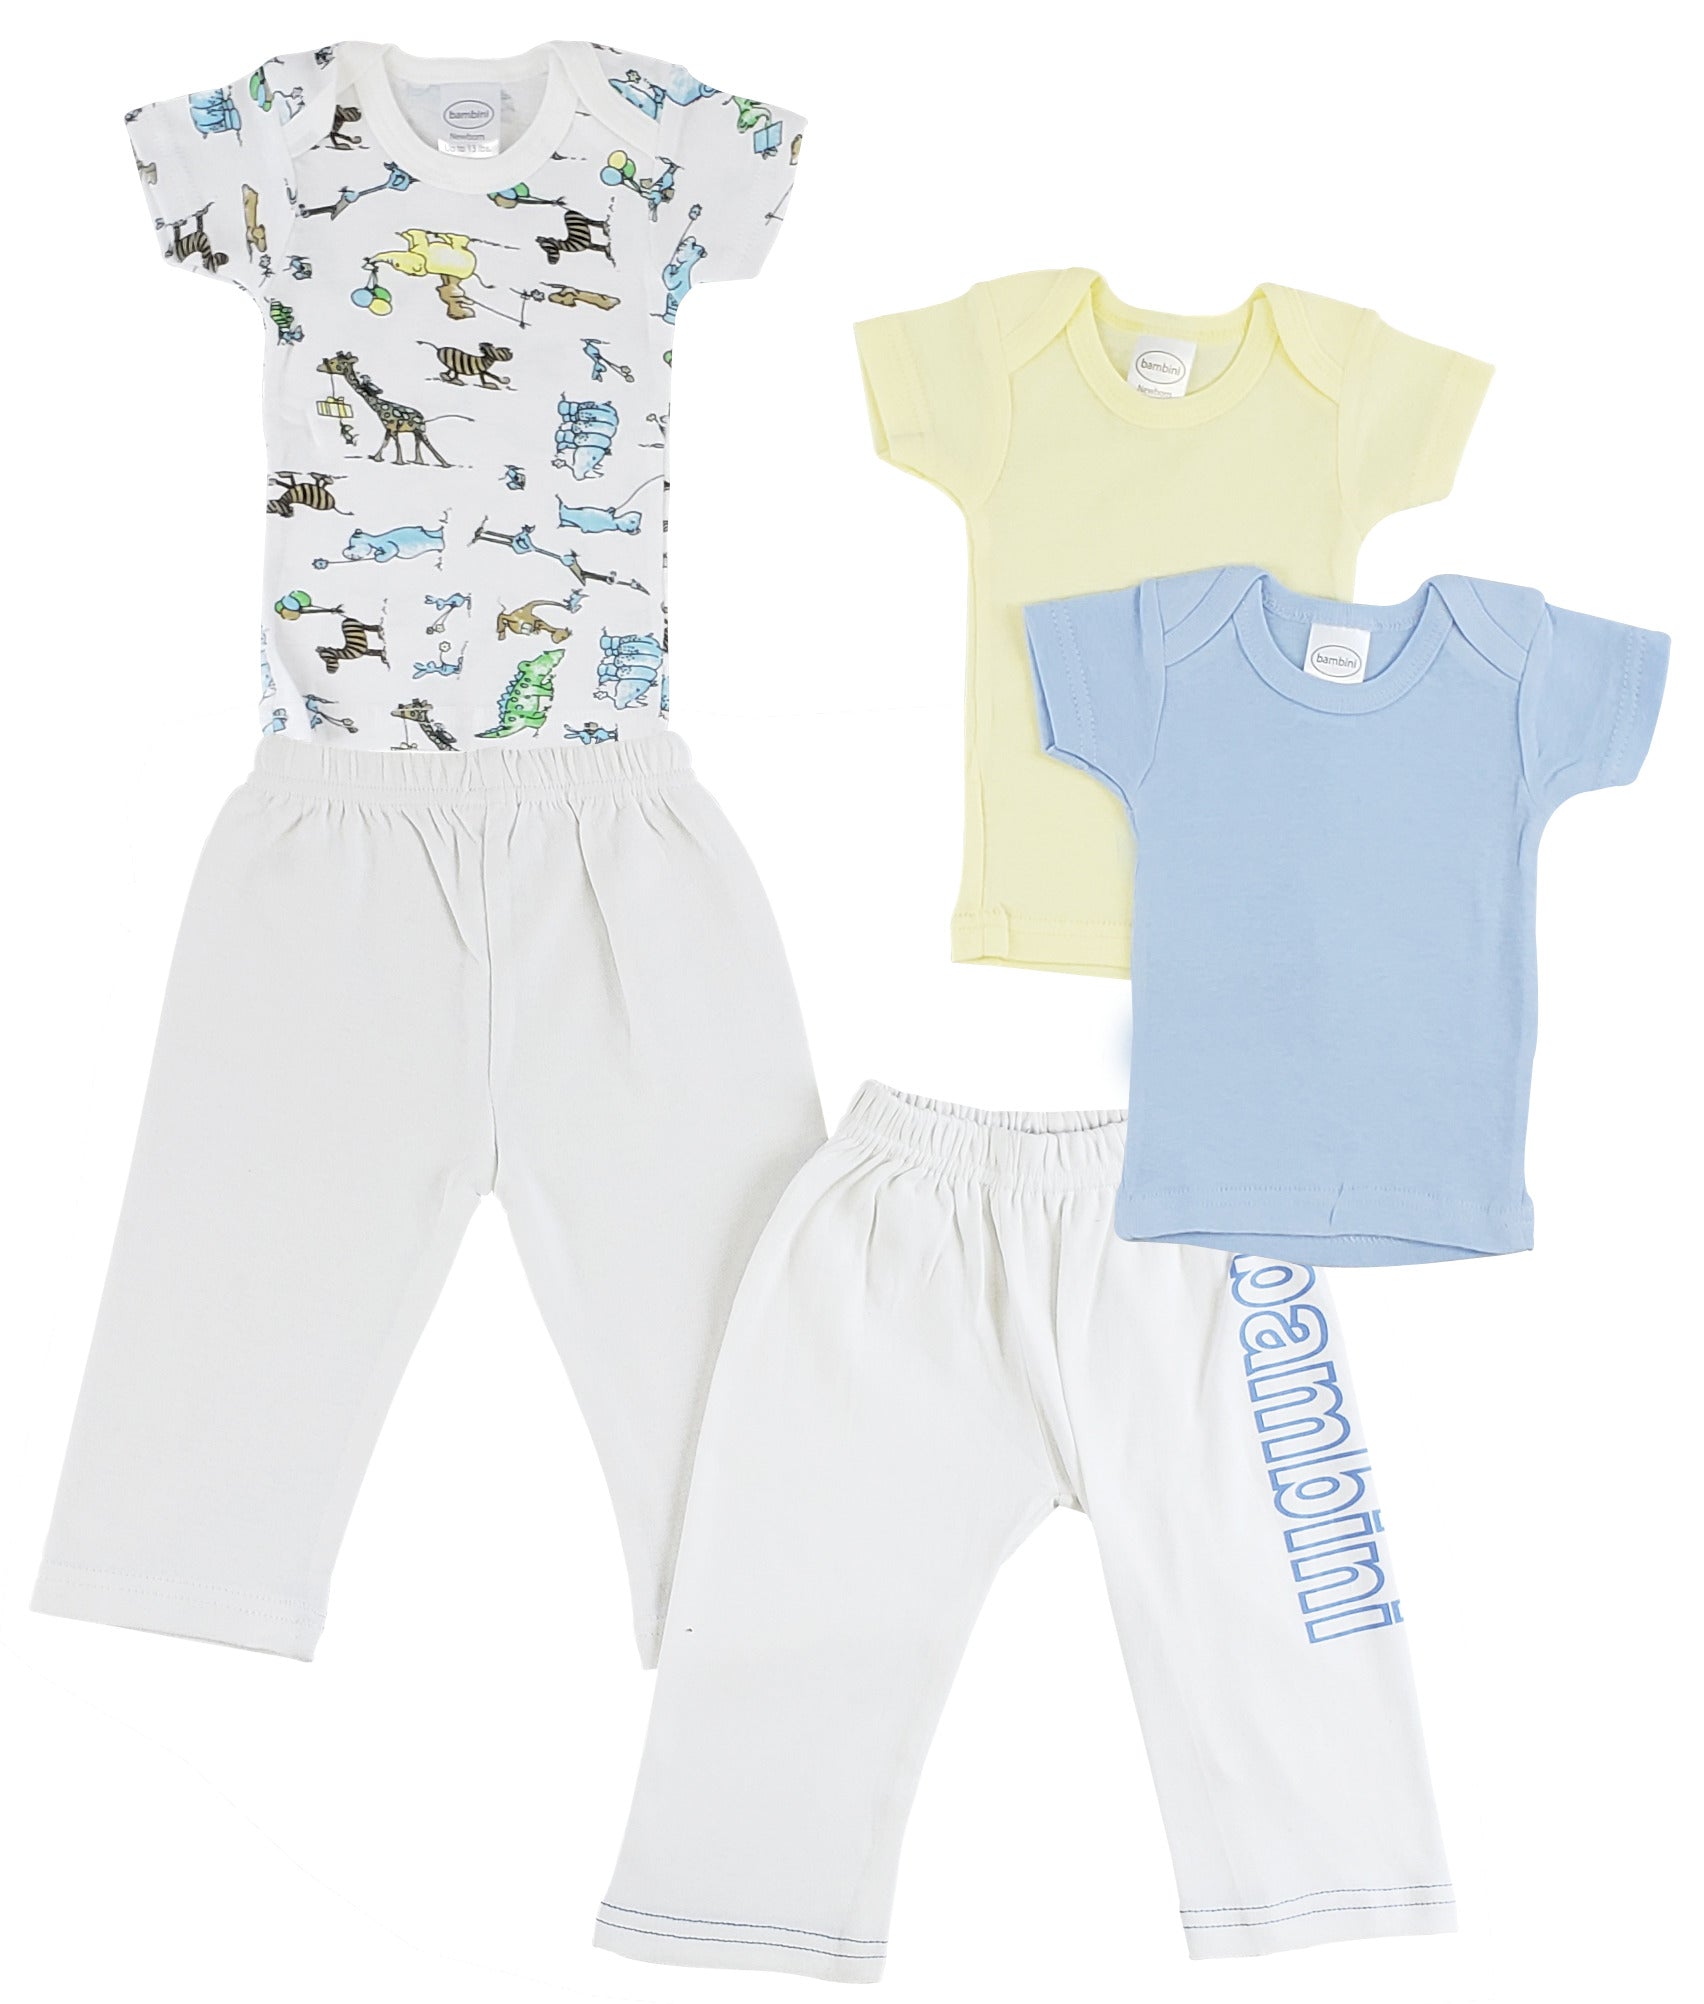 Infant Boys T-Shirts and Track Sweatpants CS_0437